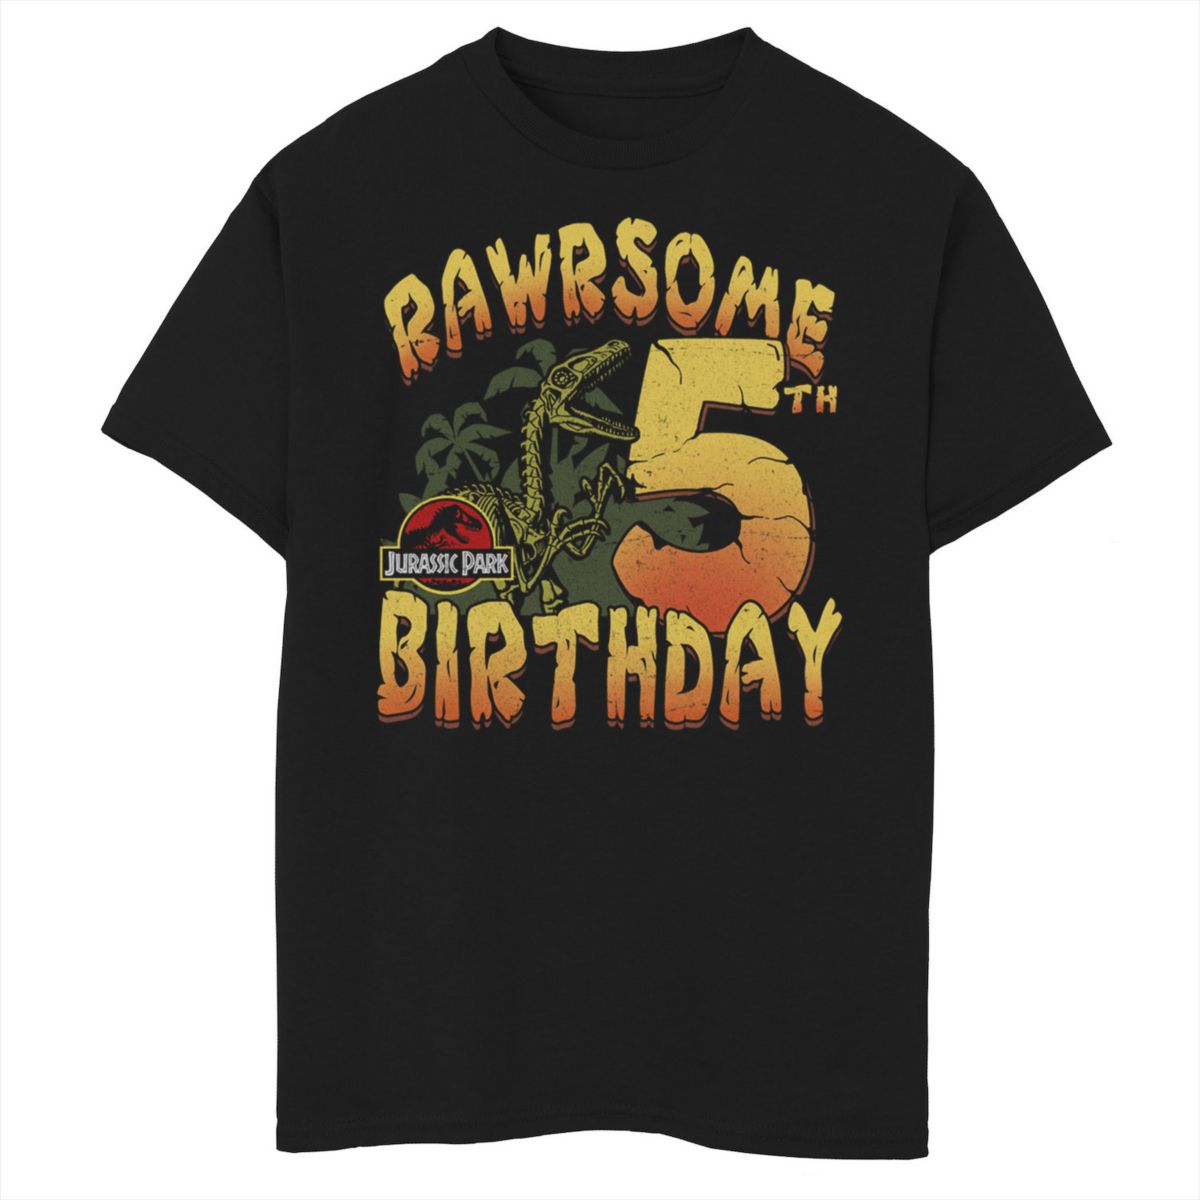 Футболка для мальчиков 8-20 Jurassic Park Rawrsome с рисунком на пятый день рождения Jurassic Park